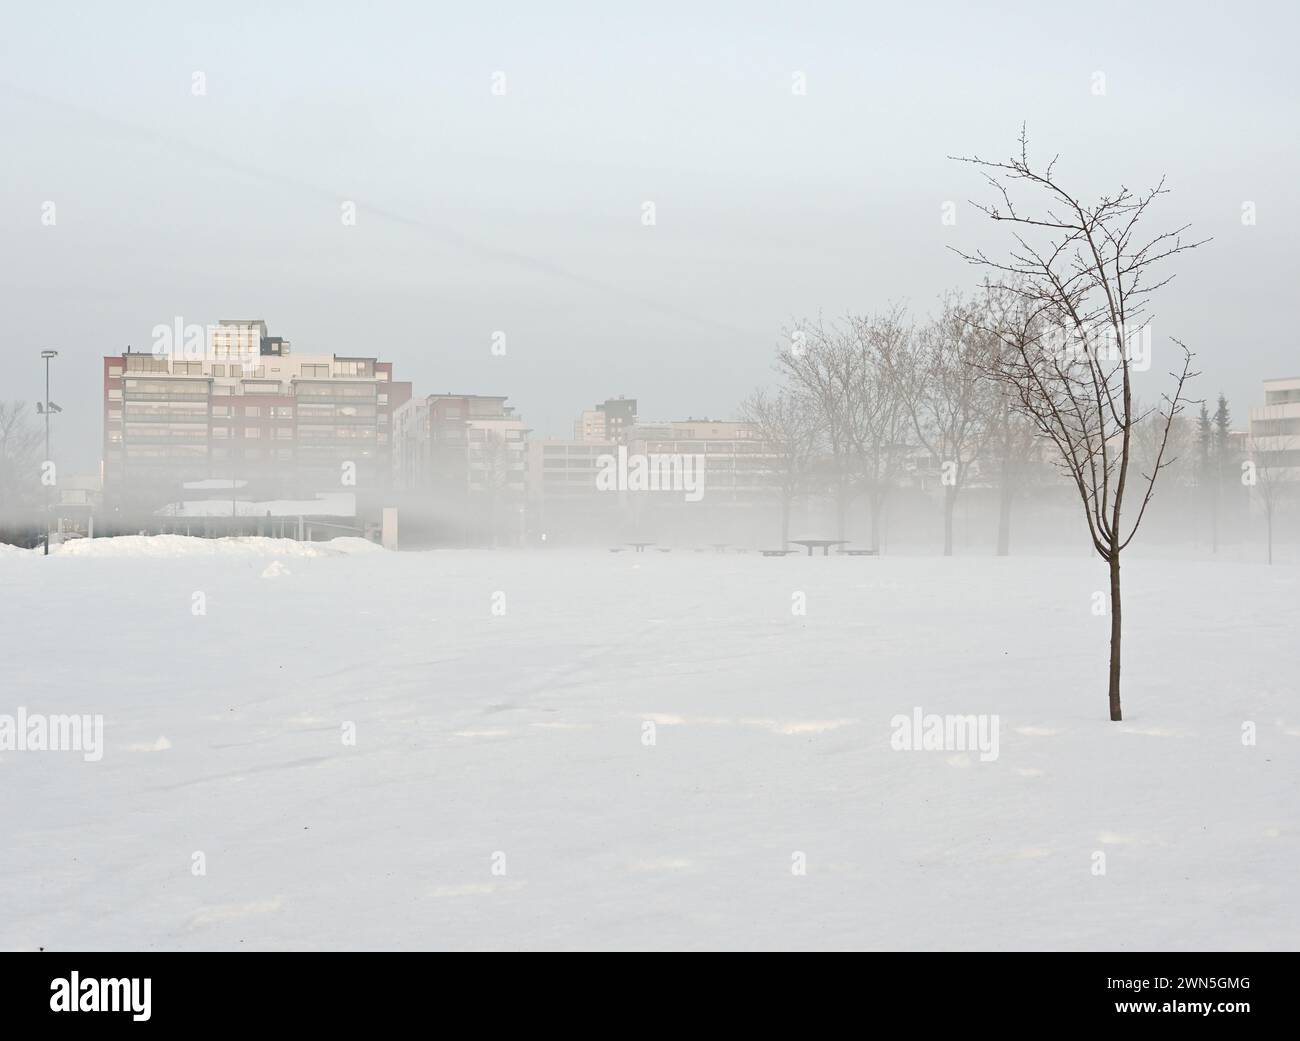 Eine ruhige Winterlandschaft zeigt einen schneebedeckten Park mit blattlosen Bäumen und nebelverhangenen Gebäuden im Hintergrund Stockfoto